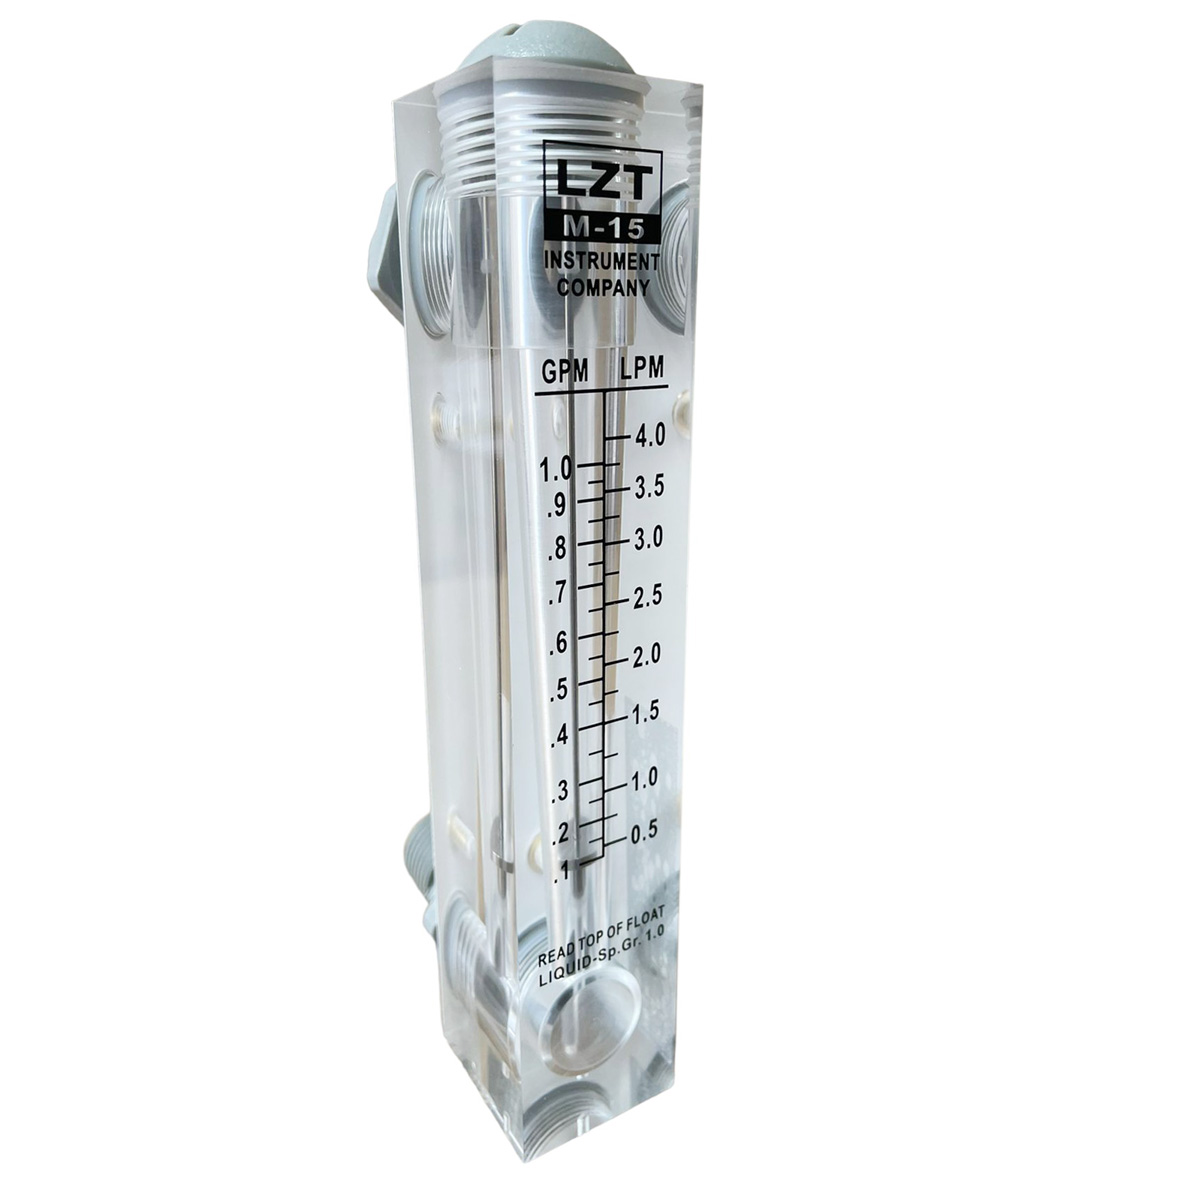 Rotámetro de vidrio para agua conexión NPT,-LZM-15 rango de 0.1 a 1GPM, comprar rotametro flujometro de agua Kusitest-Peru